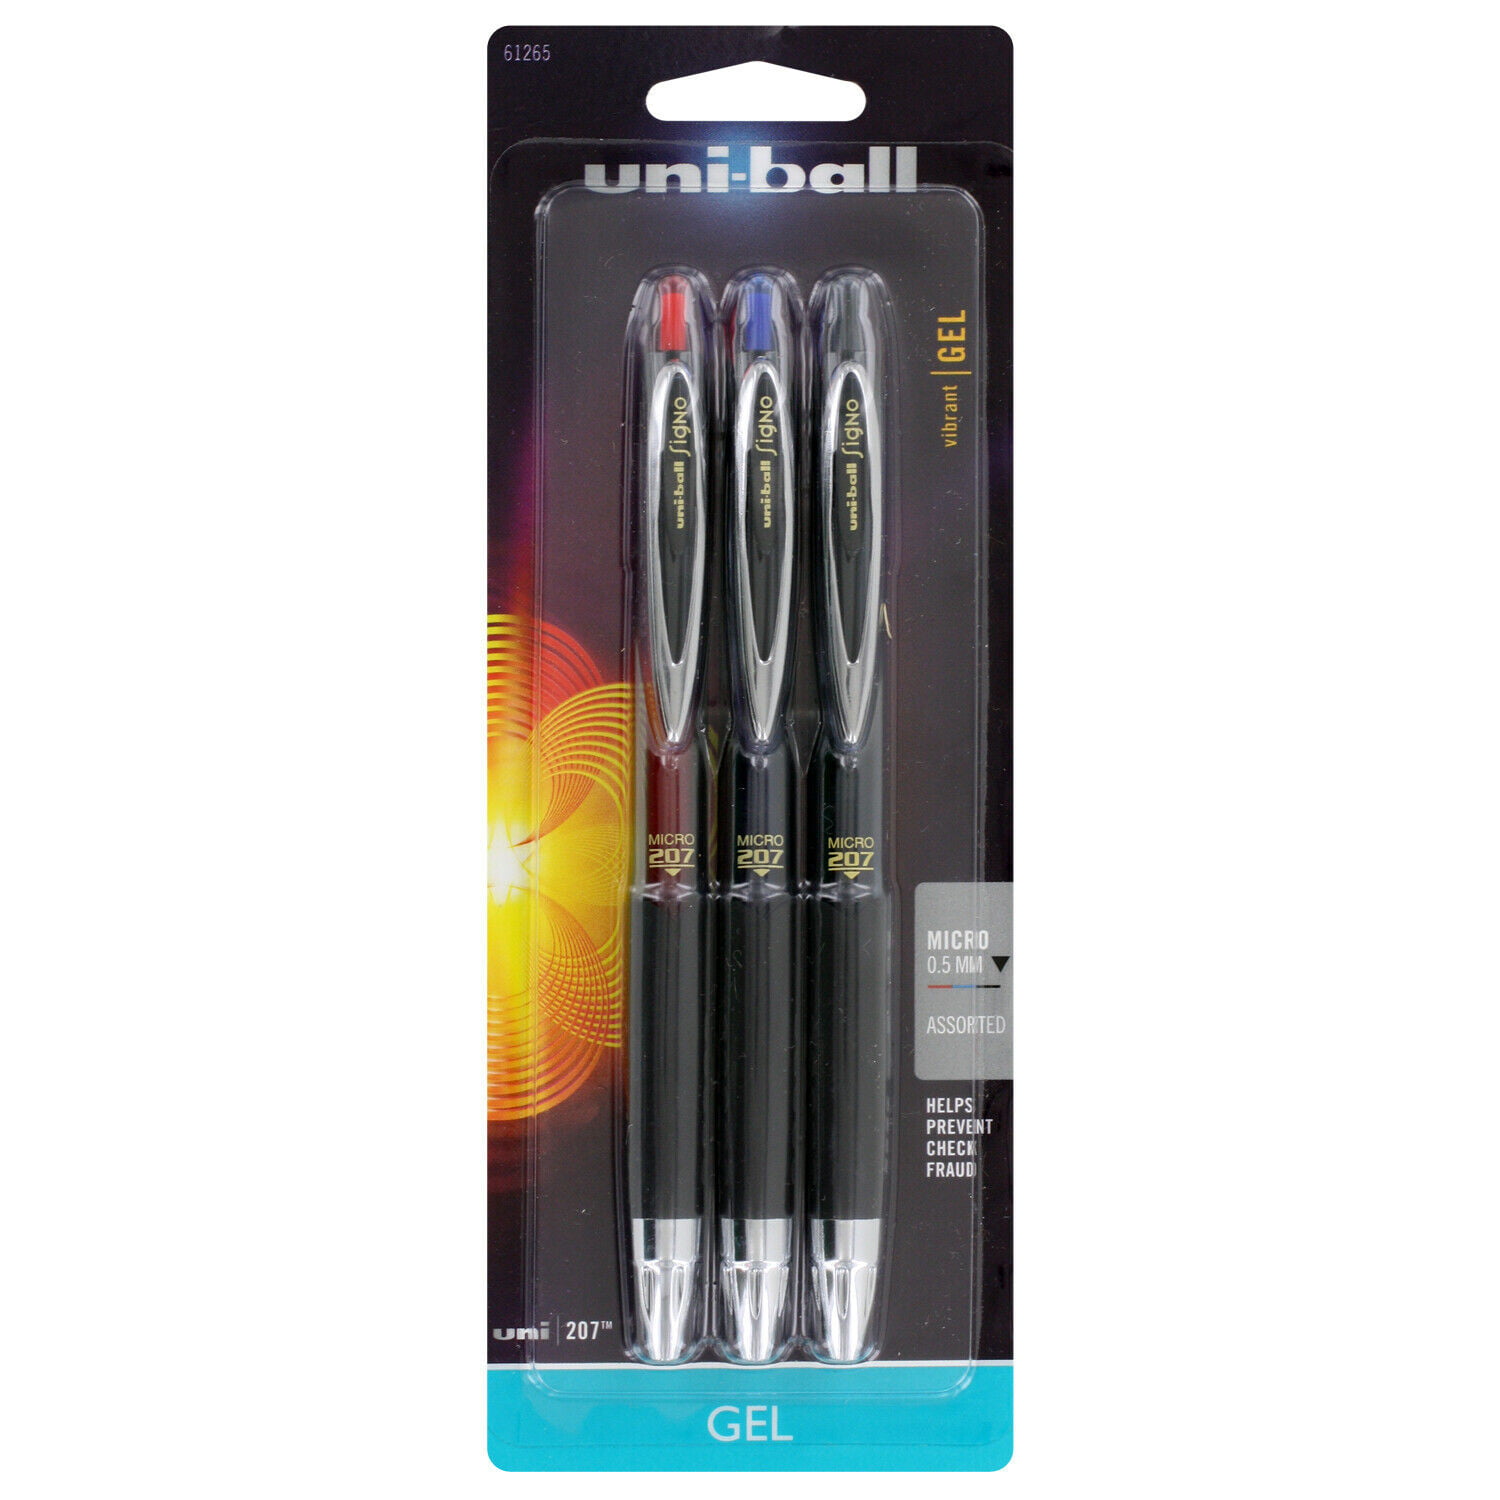 uni-ball Signo 207 Retractable GEL Pen Black Ink 1mm Dozen 1790895 for sale online 